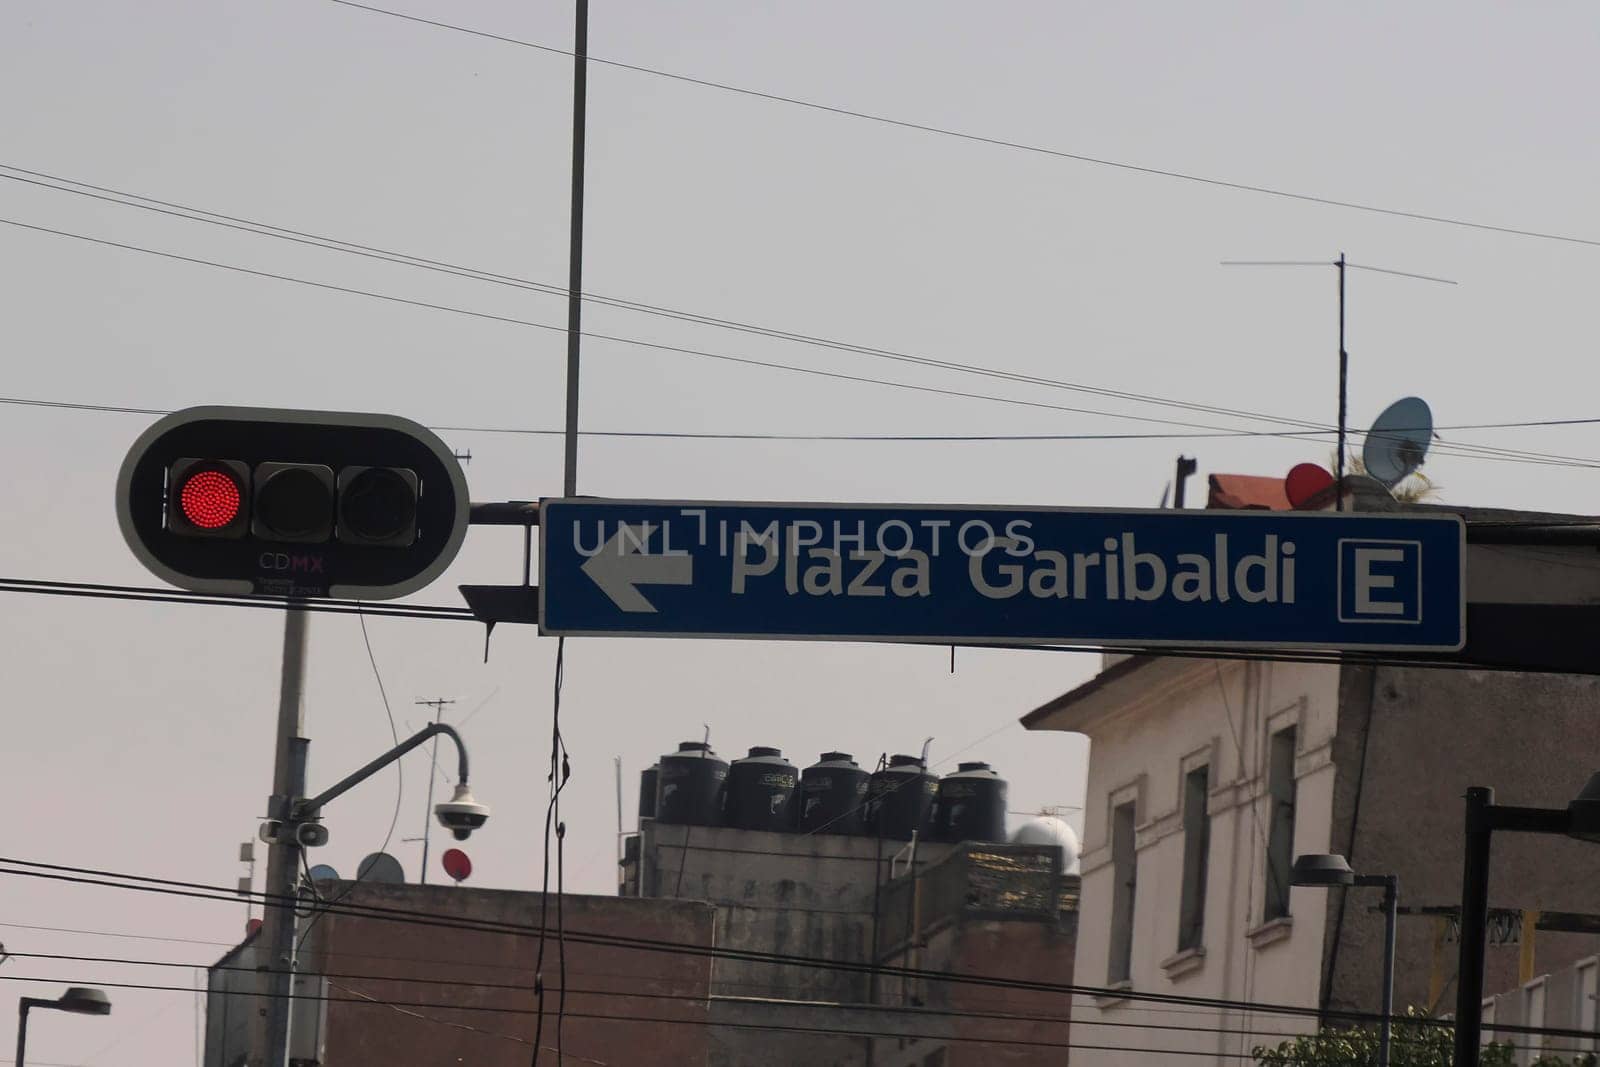 Plaza garibaldi street sign ciudad de mexico, mexico city by AndreaIzzotti